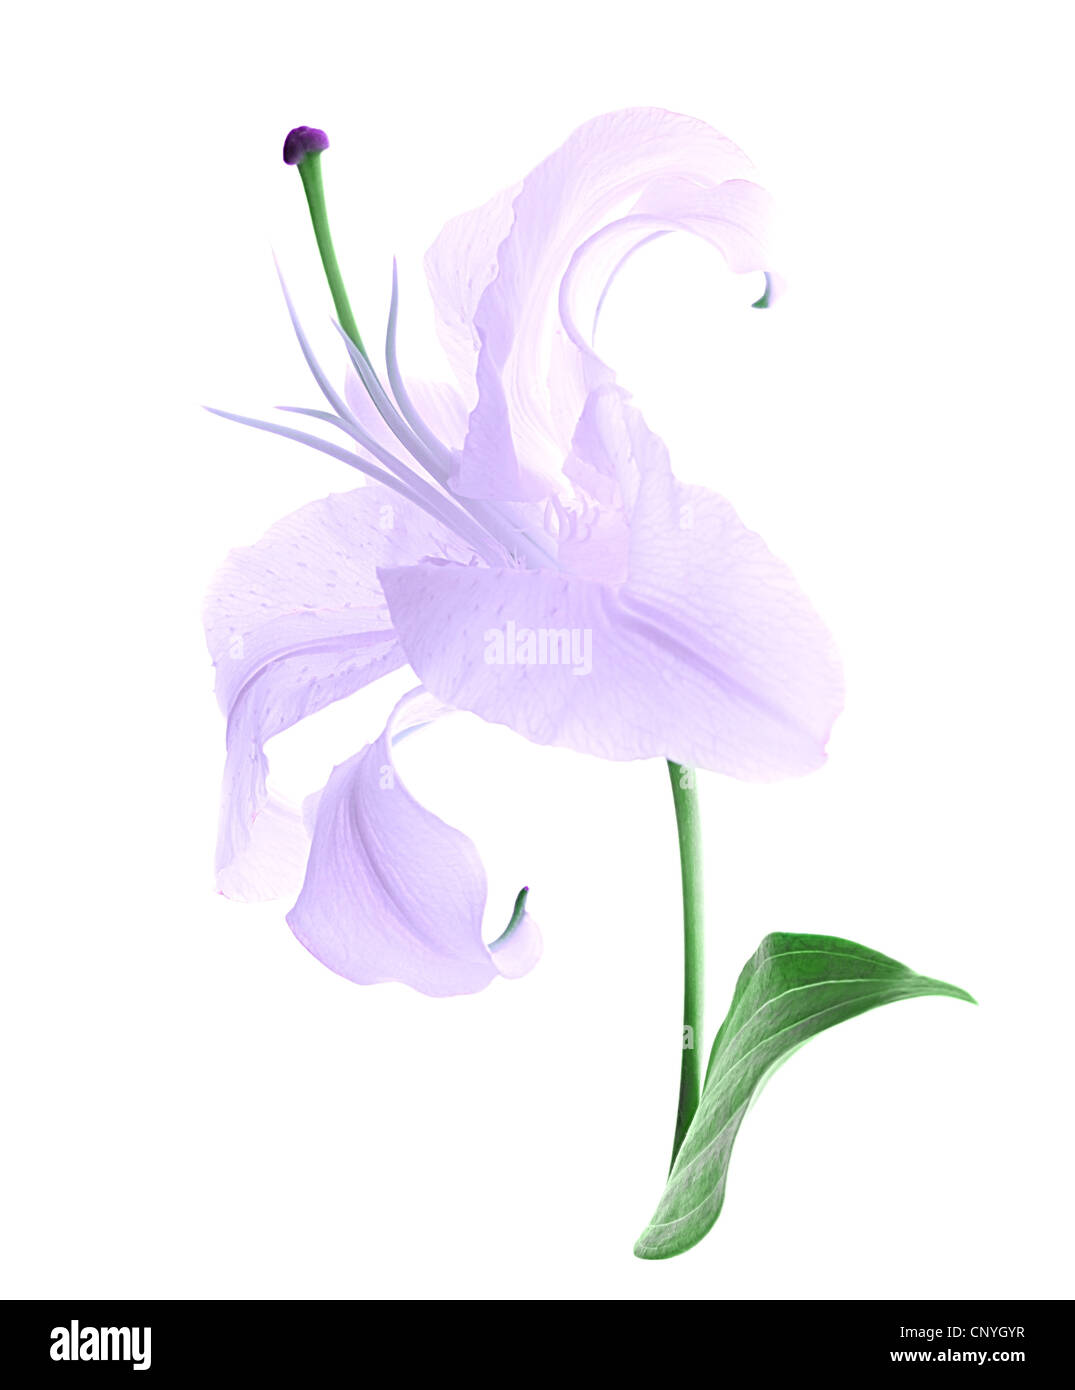 Belle fleur de lys violet isolé sur fond blanc Photo Stock - Alamy